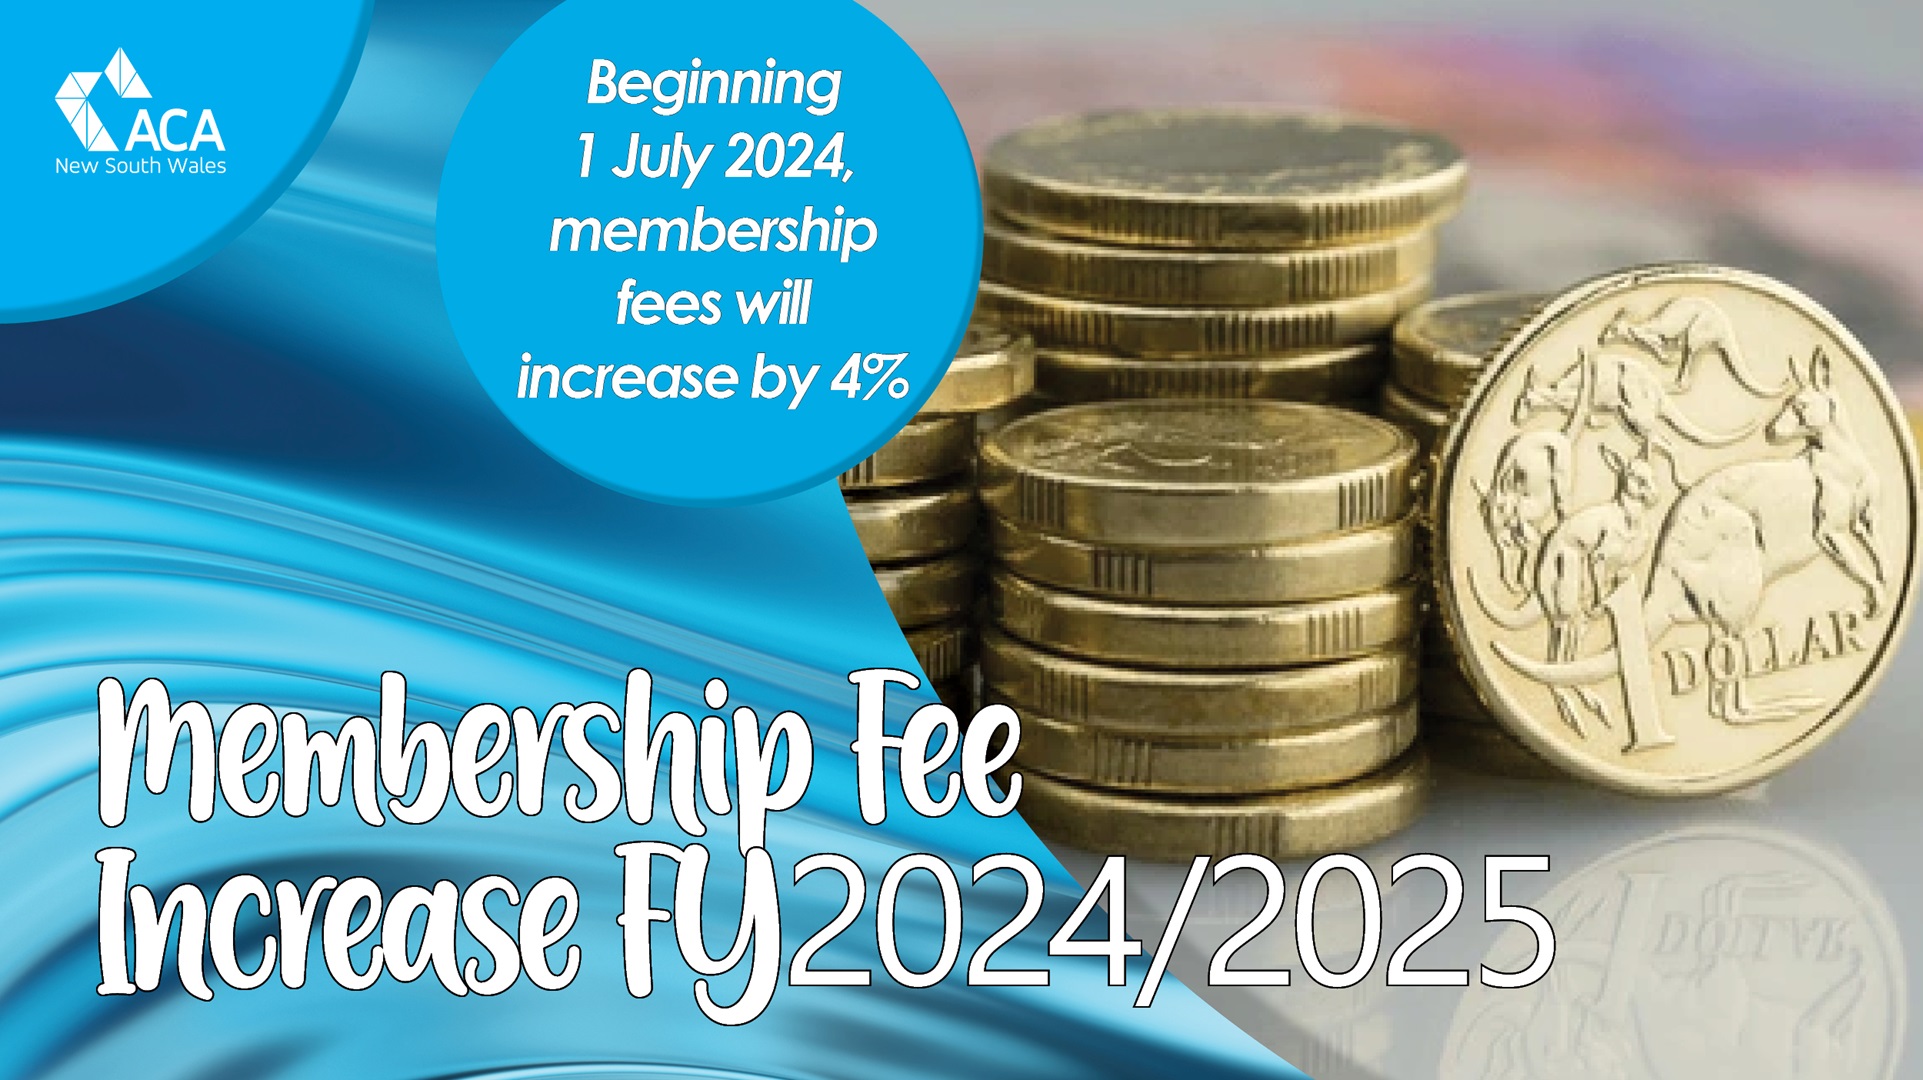 Membership Fees increase by 4% beginning 1 July 2024